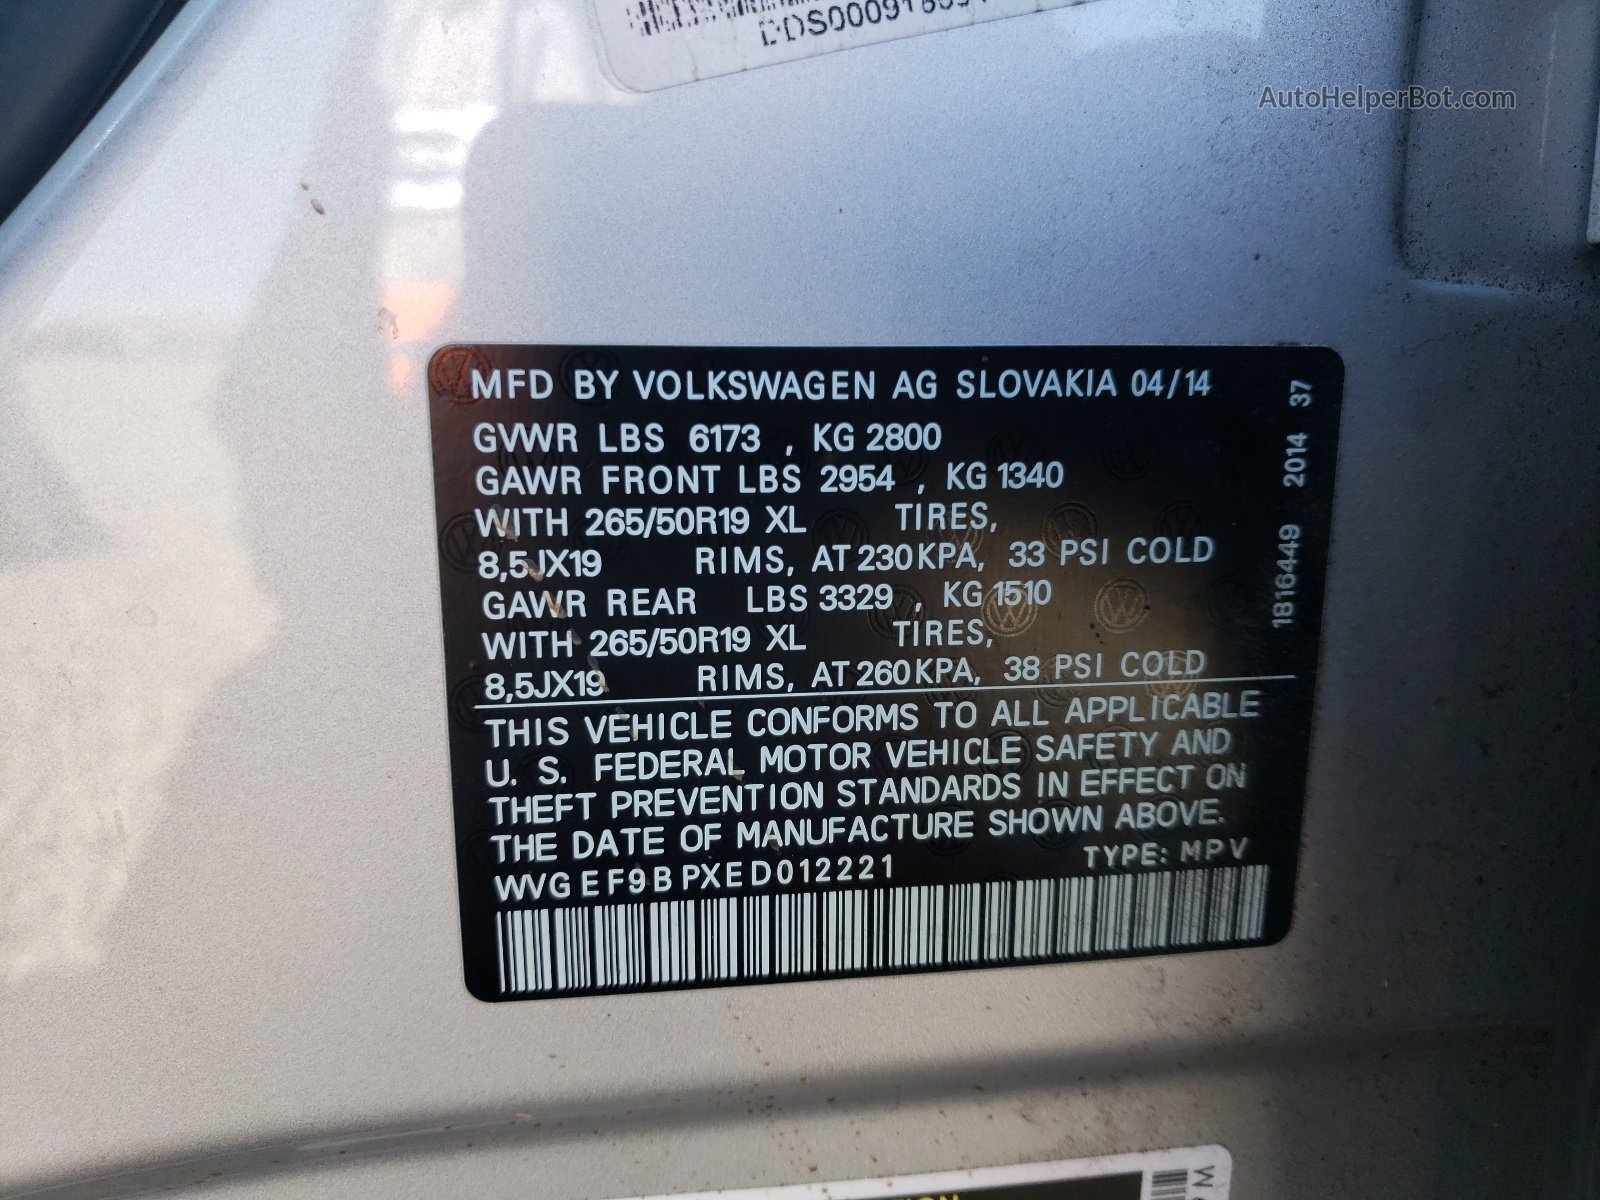 2014 Volkswagen Touareg V6 Silver vin: WVGEF9BPXED012221